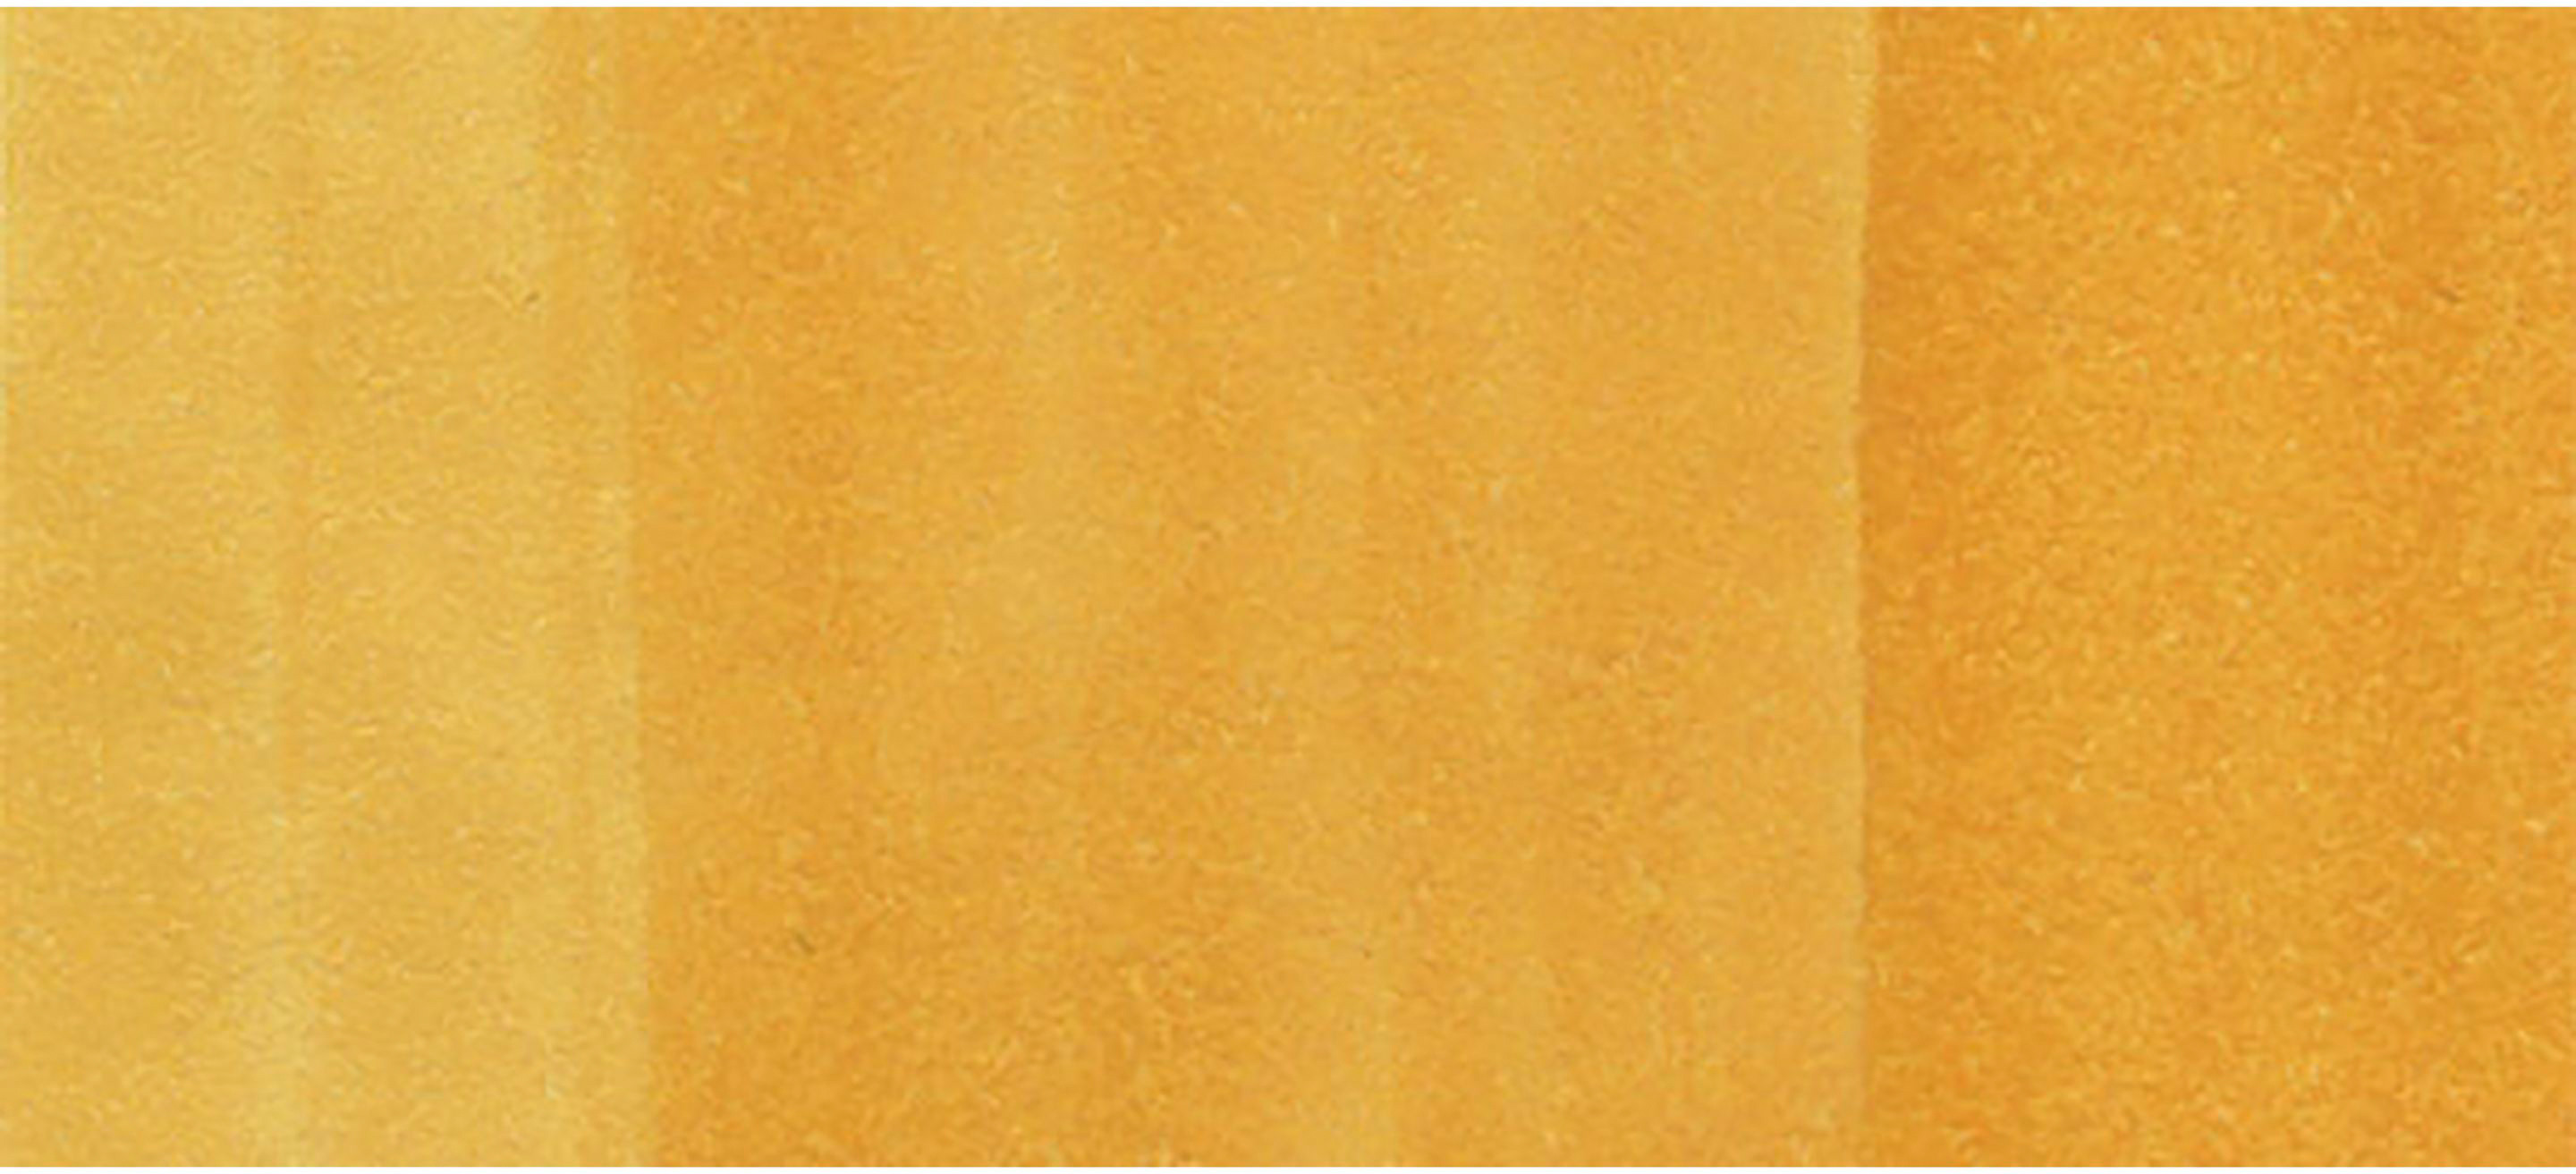 COPIC Marker Sketch 21075194 Y23 - Yellowish Beige